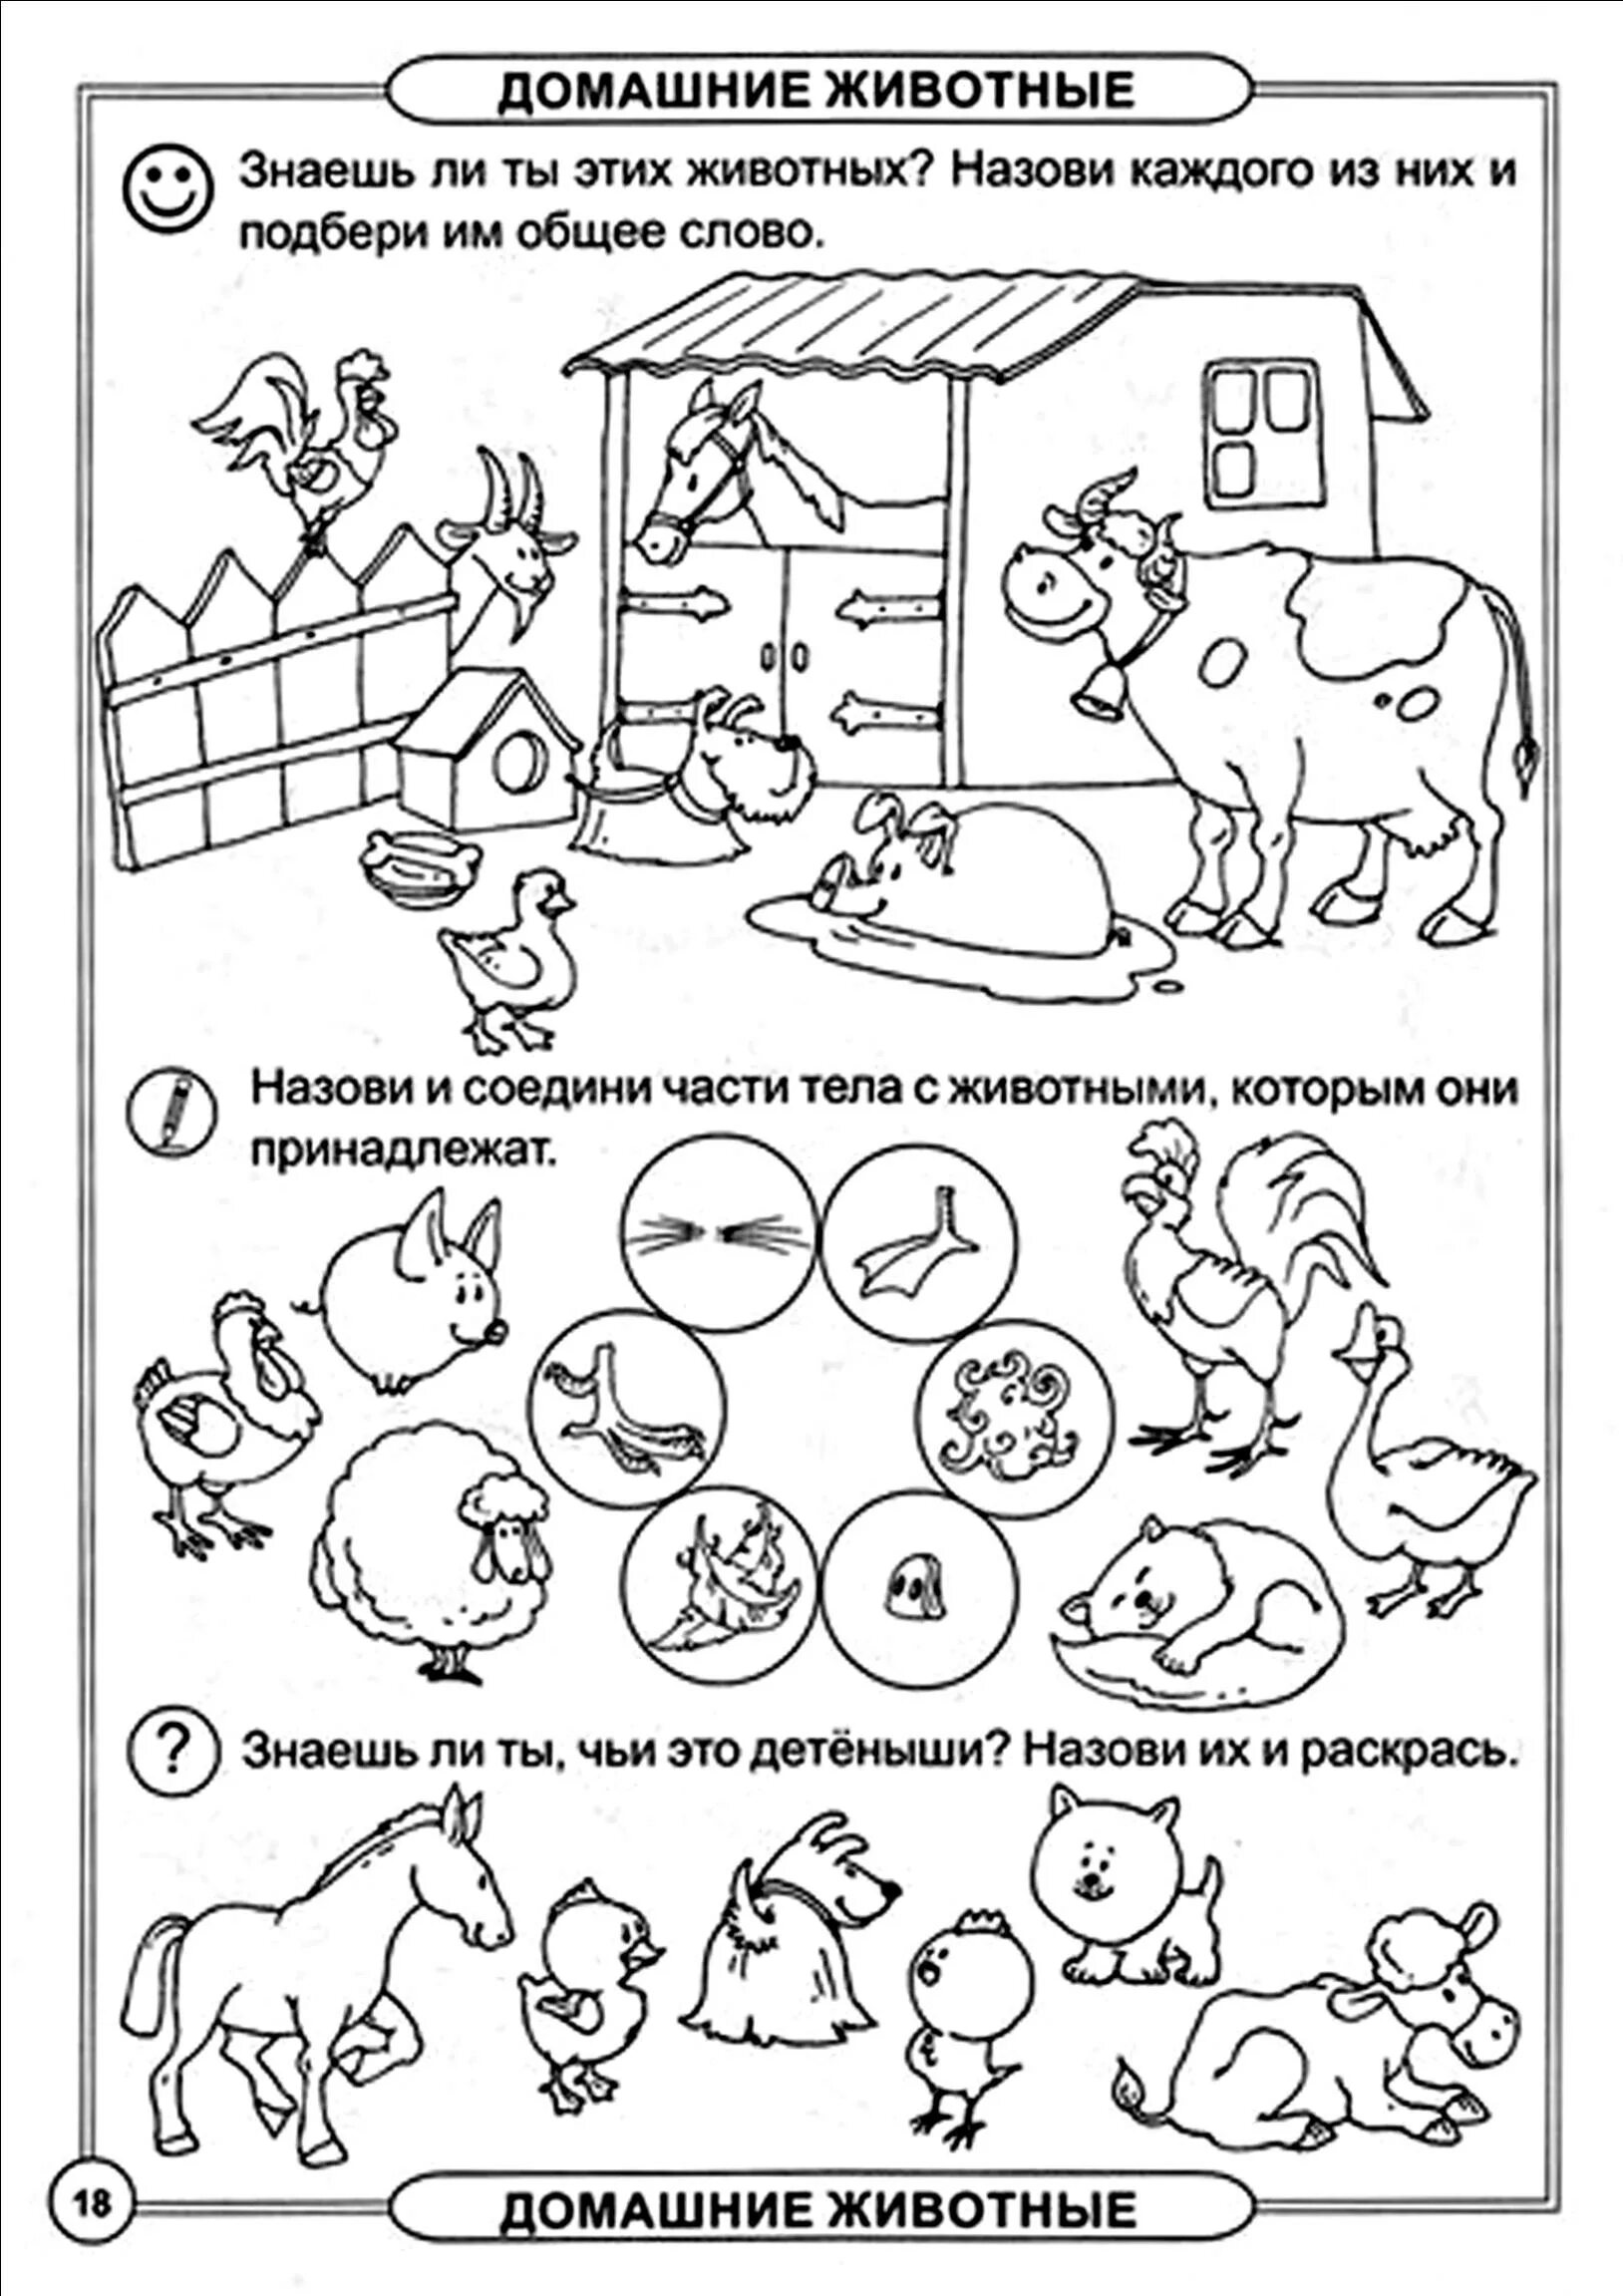 Лексика 4 года. Домашние животные задания для дошкольников 6-7 лет. Домашние животные задания для детей. Домашние животныехадания. Домашнее животные задания для дошкольников.